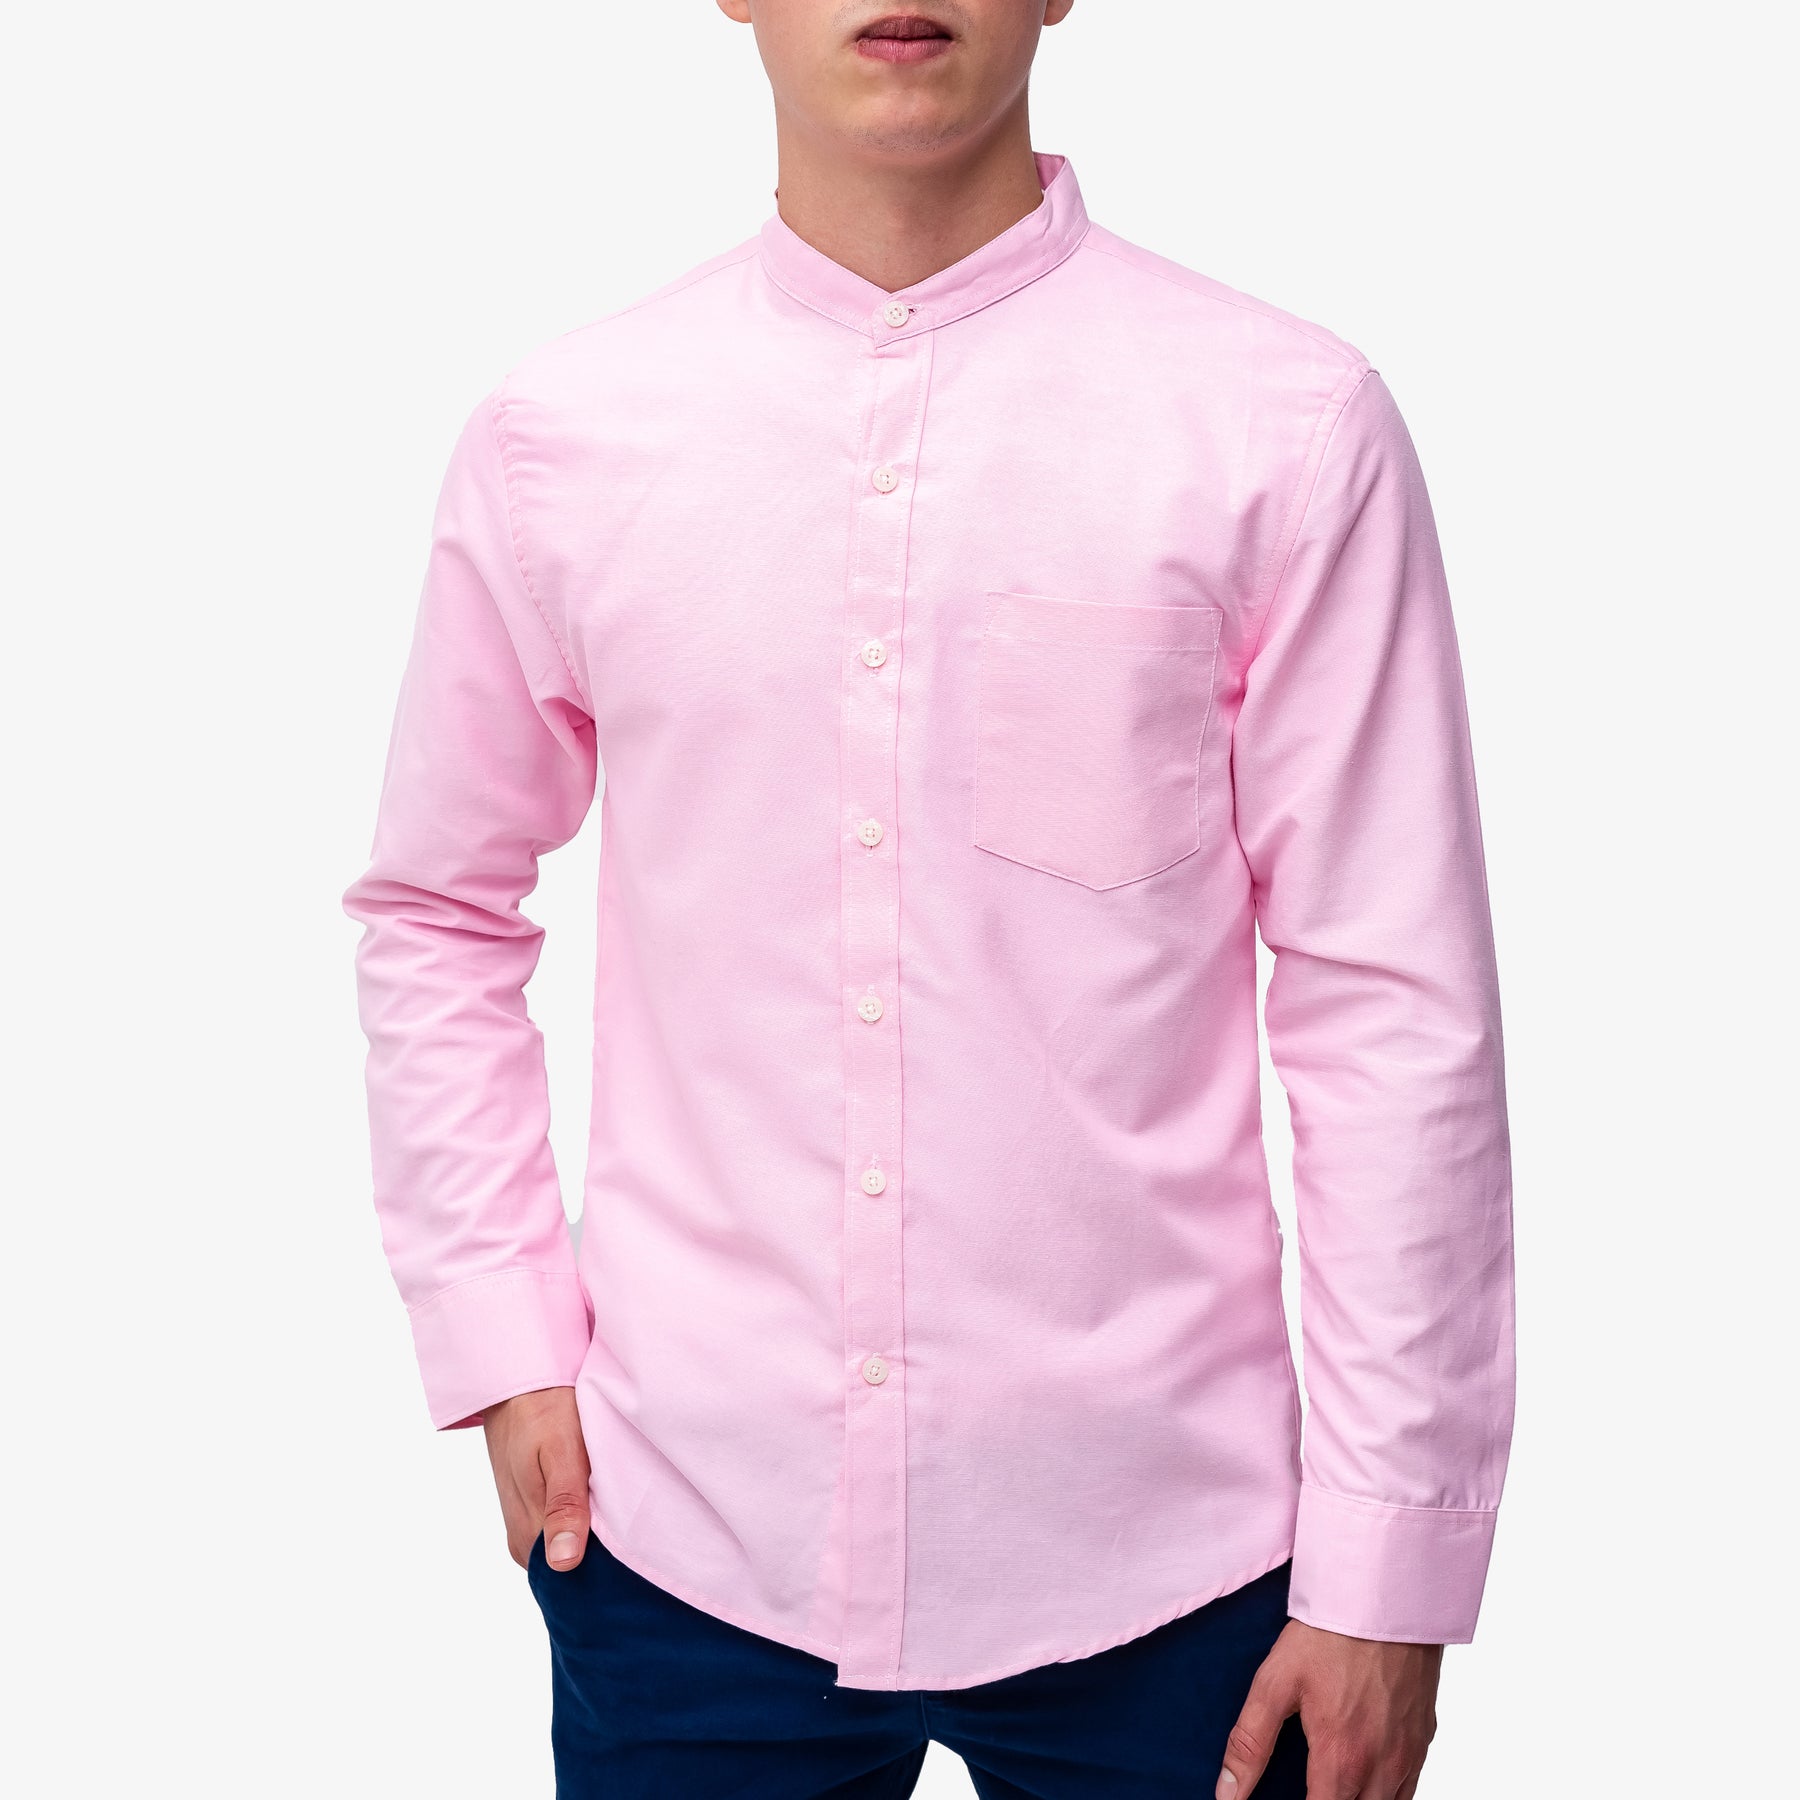 Camisa manga larga para hombre color blanco y rosado